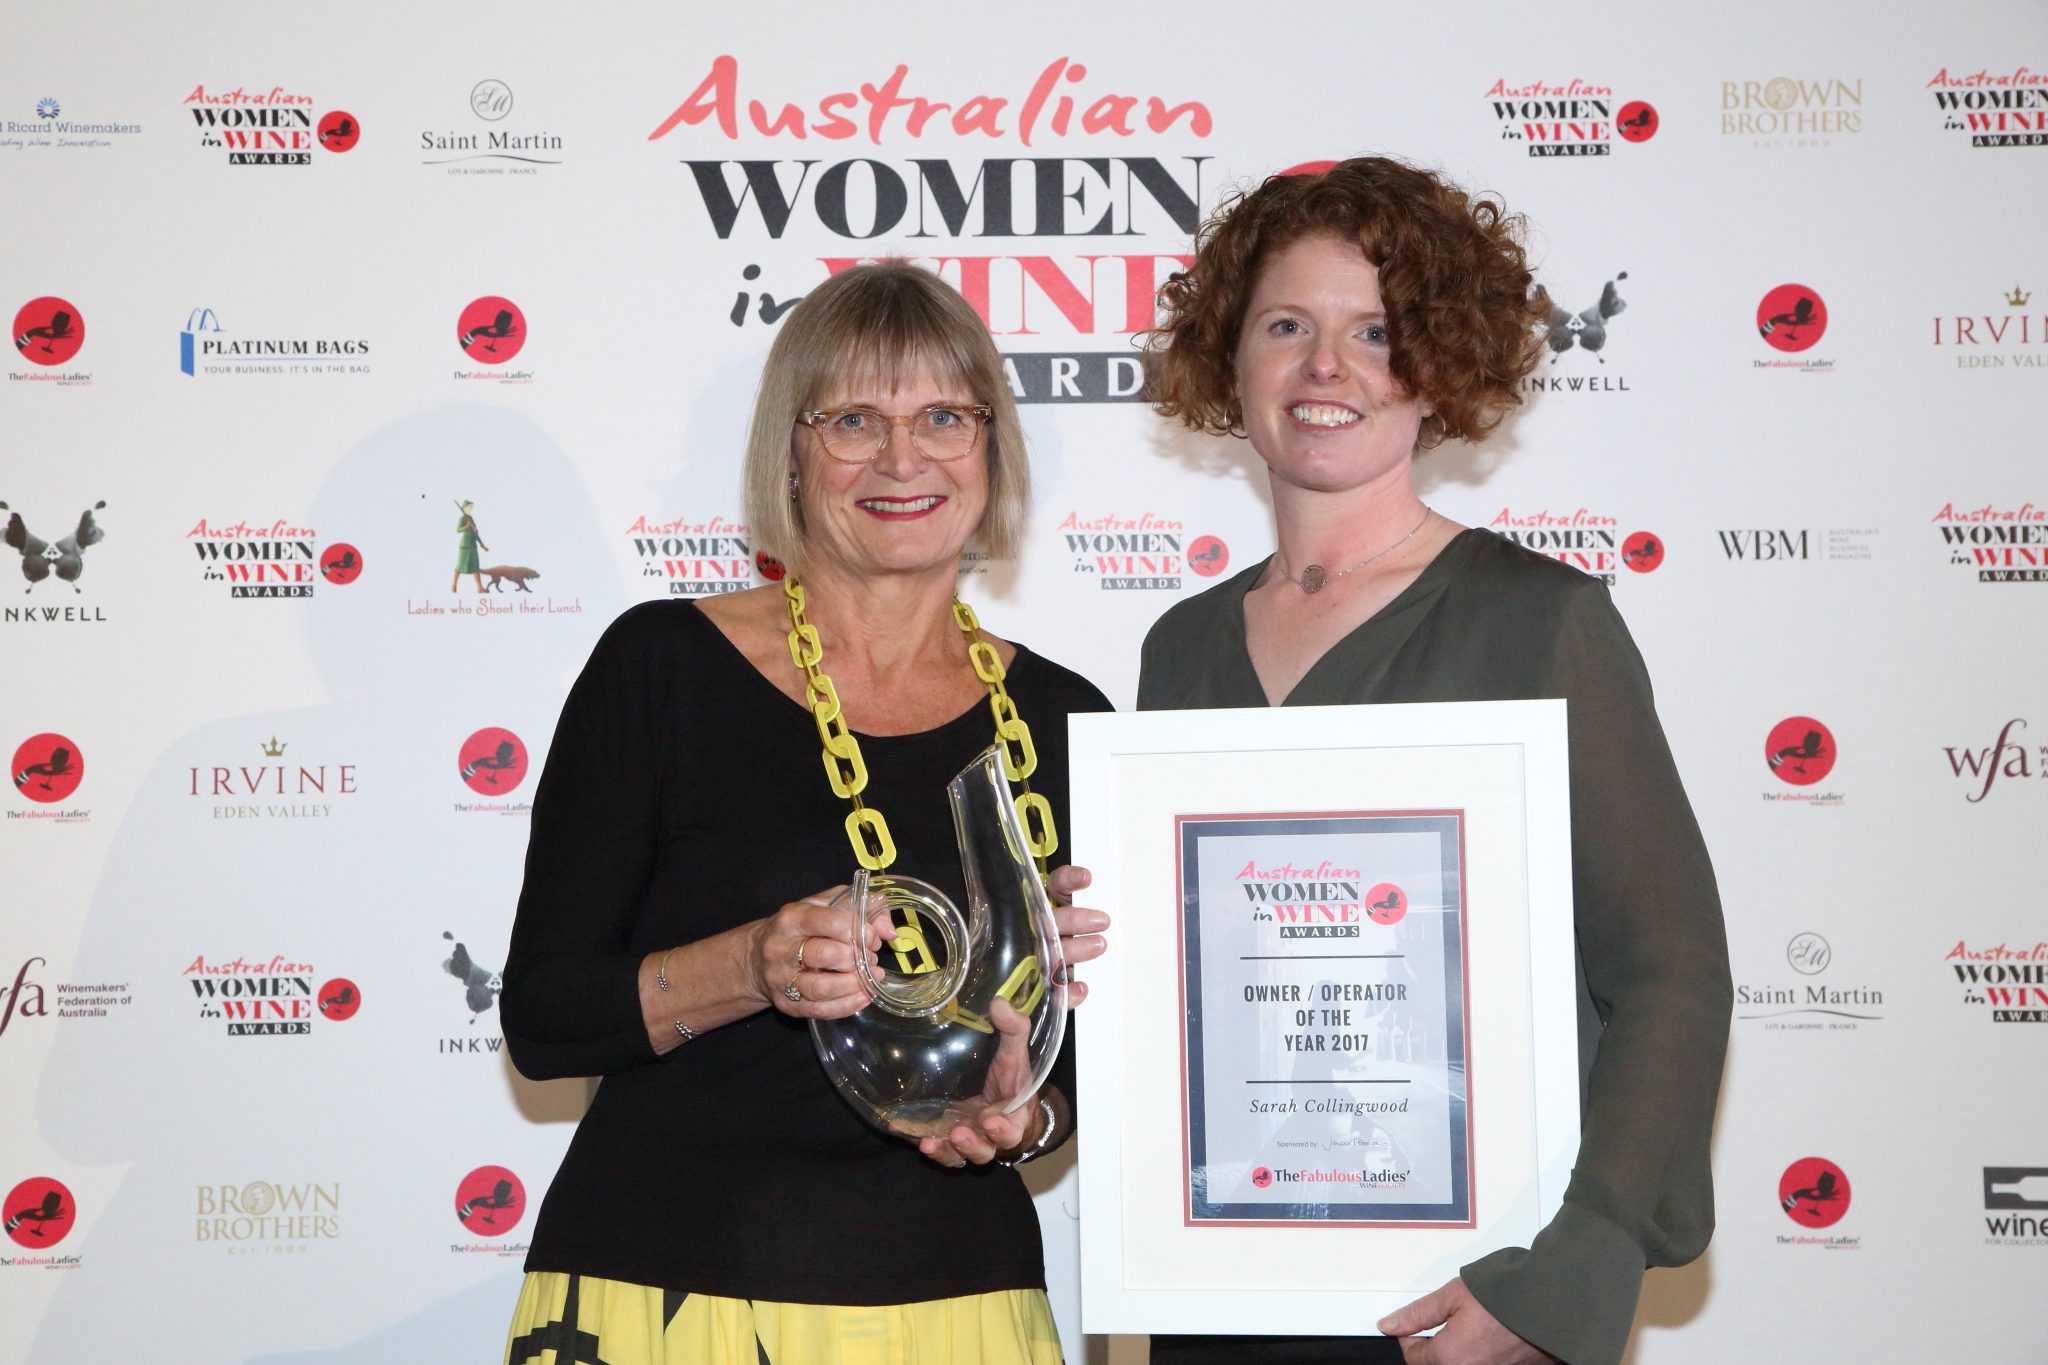 Margaret River Region Women Finalists in 2018 Australian Women in Wine Awards